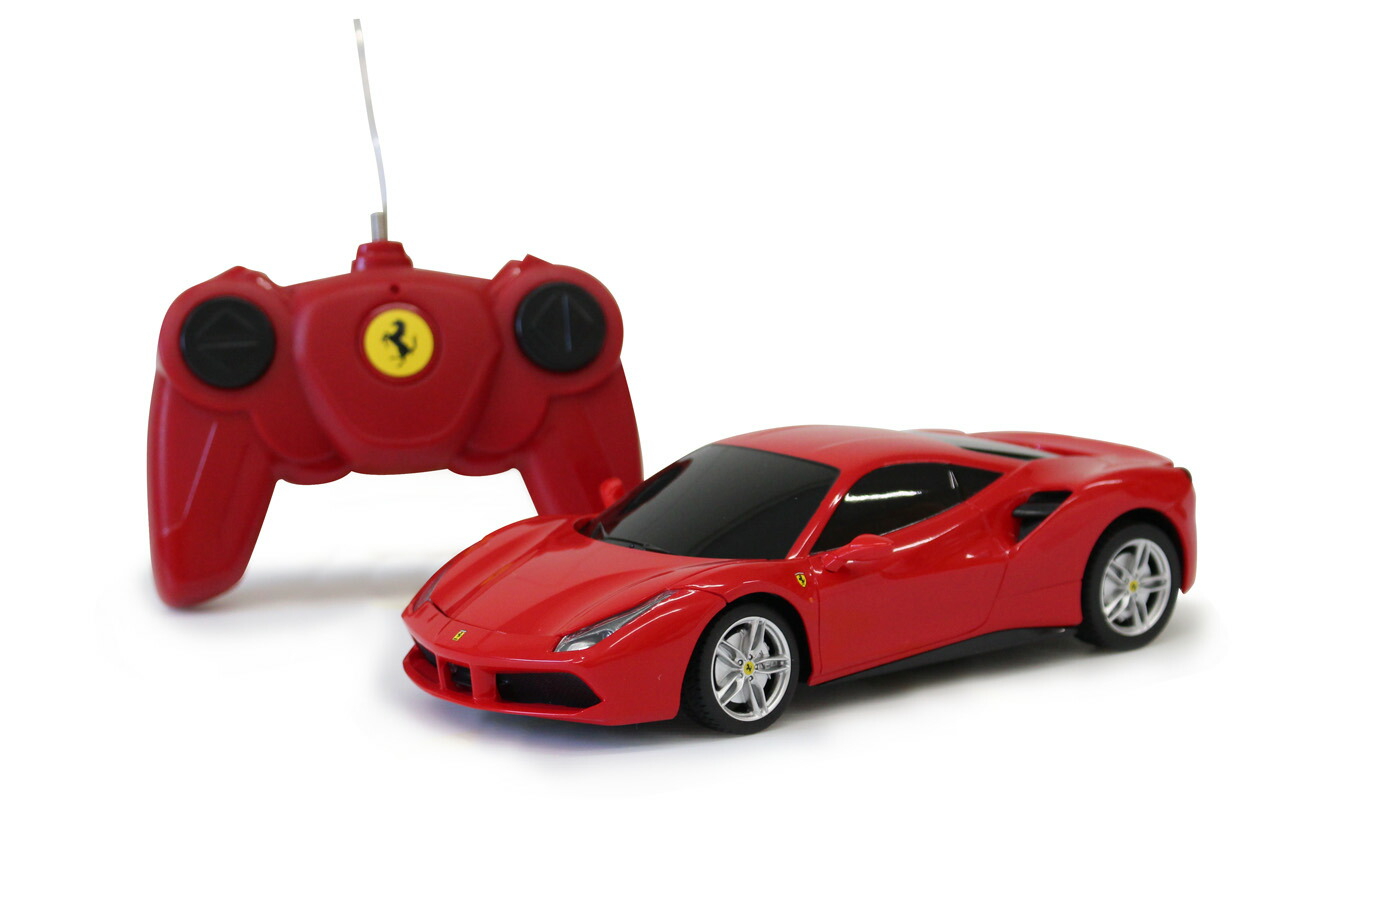 楽天市場 クーポン配布中 フェラーリ Ferrari 458 Italia Rcカー ラジコンカー 1 18スケール 幅25 5 奥行13 高さ7cm Mg Rcf18f コントローラー付 自動車 スポーツカー スーパーカー おもちゃ 玩具 こども 子供 誕生日 プレゼント ギフト おしゃれ ミムゴ カウオール